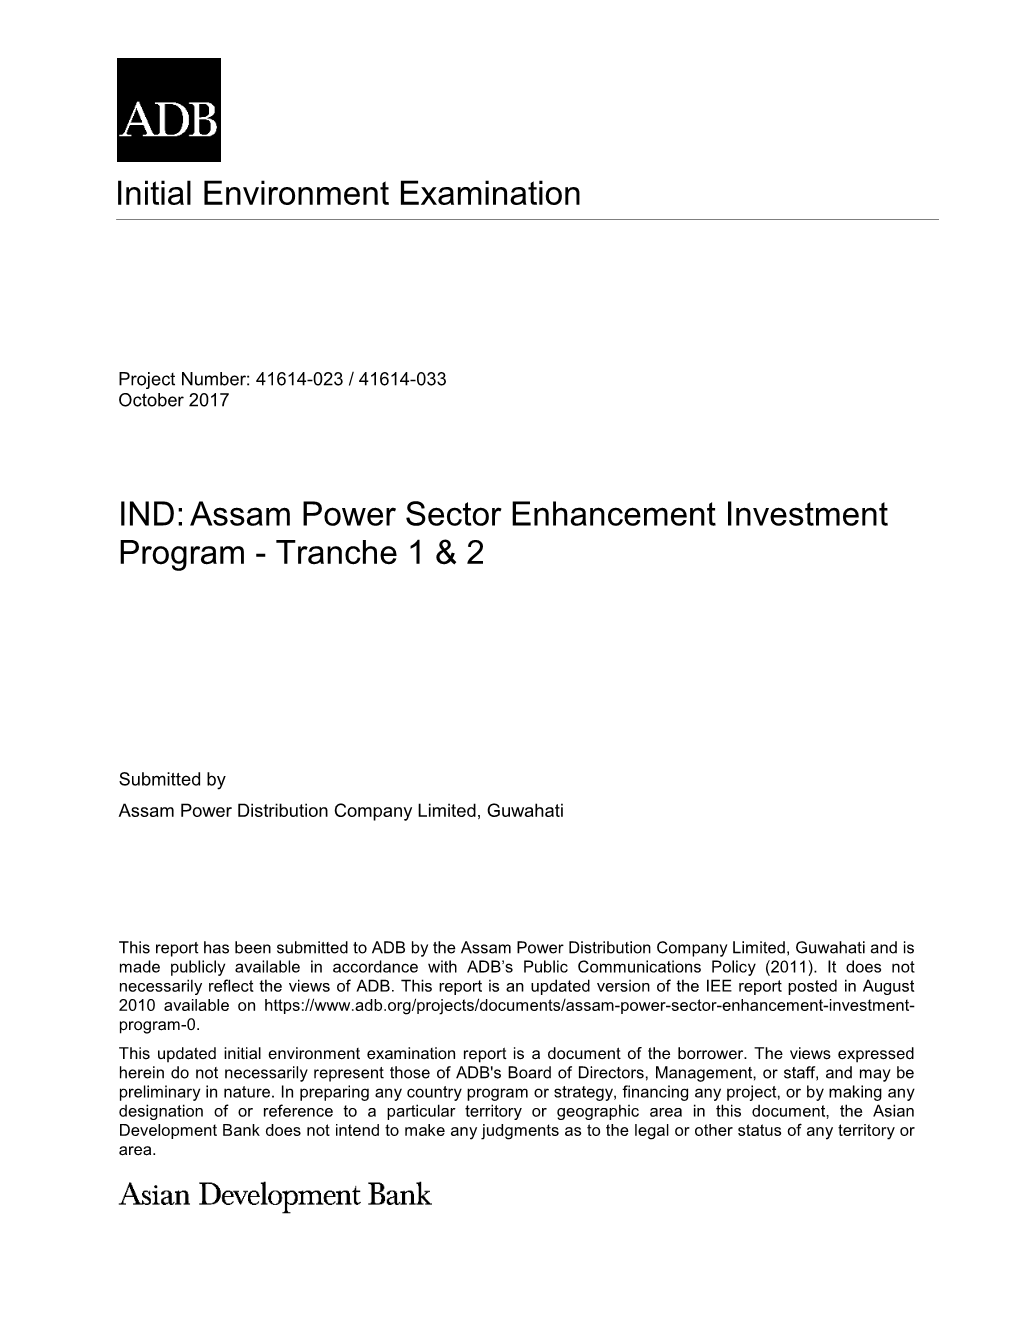 IND:Assam Power Sector Enhancement Investment Program